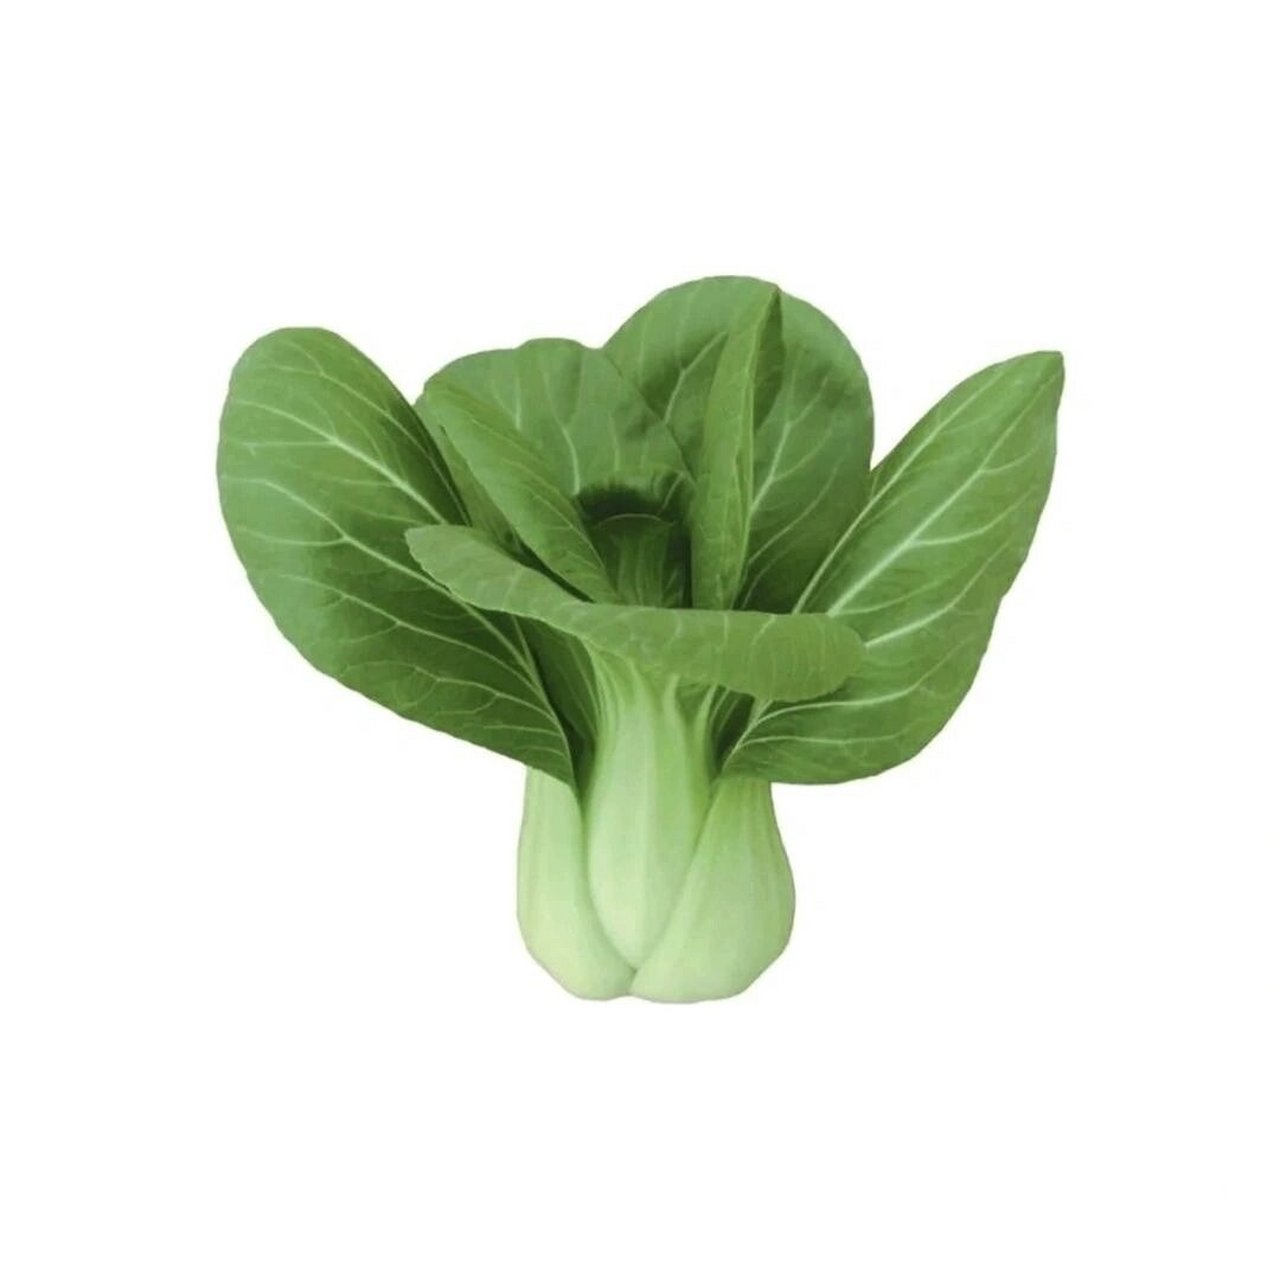 绿色蔬菜头像图片